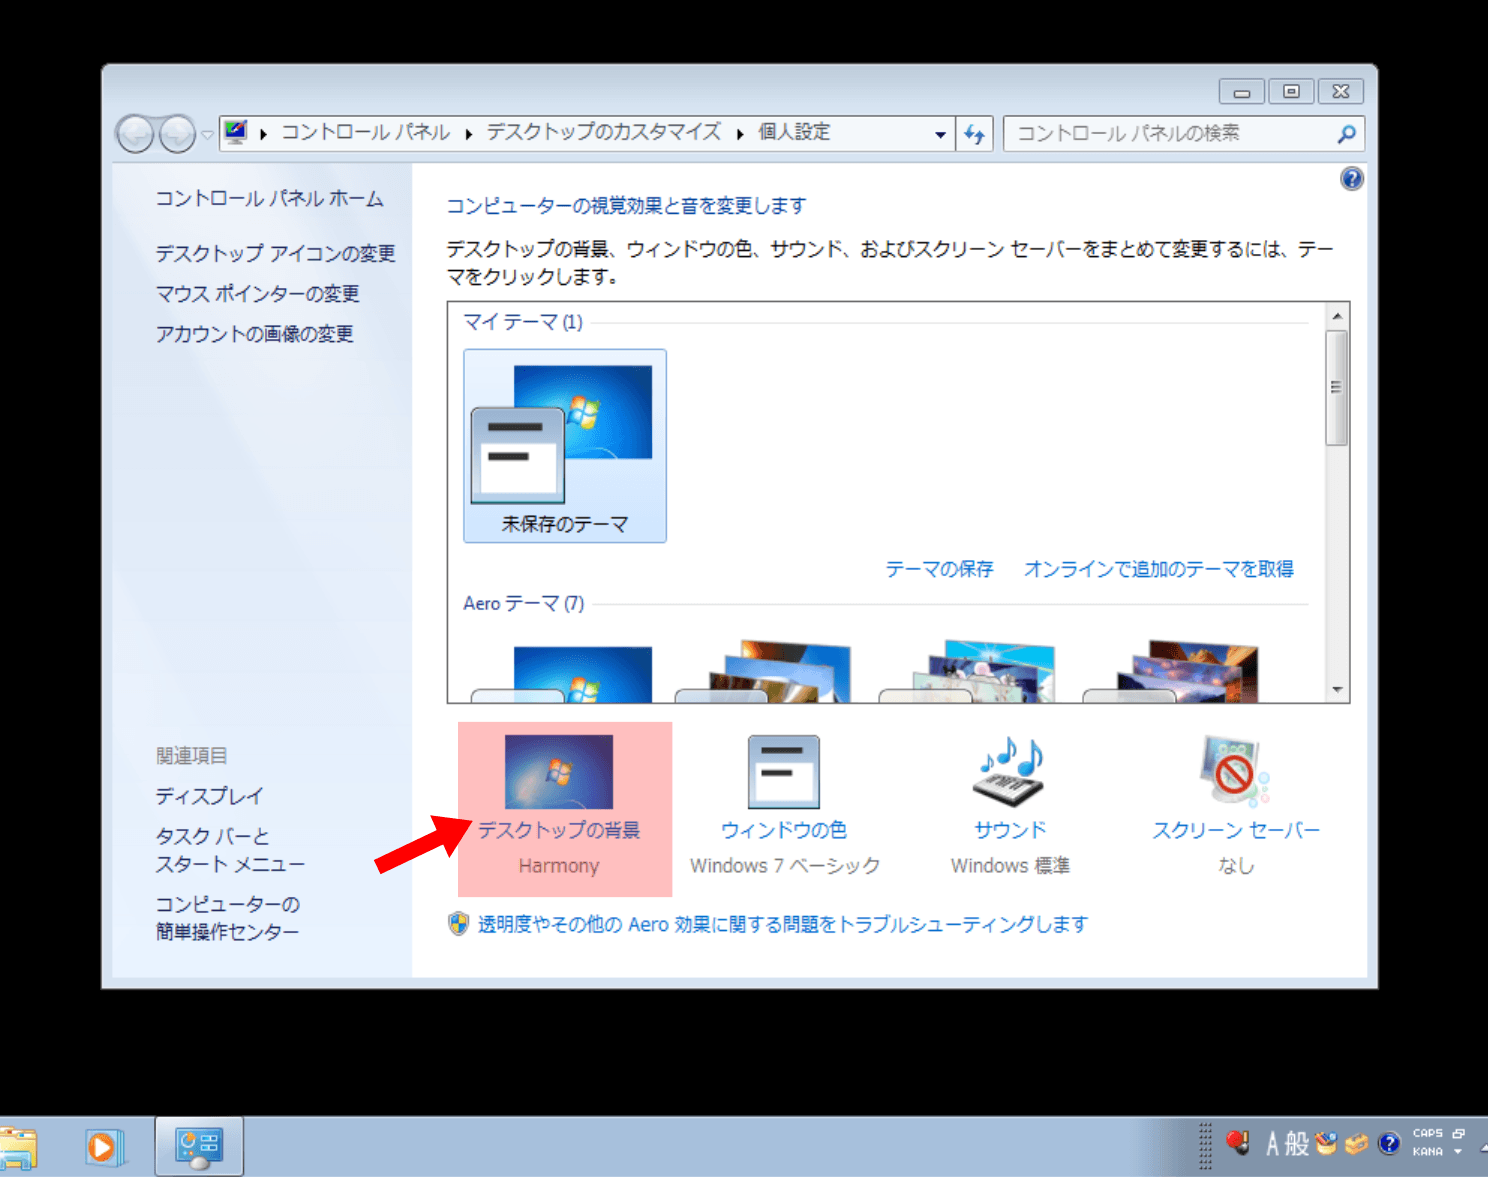 Windows7で壁紙真っ黒になるのを修正するkb4539601が公開されています